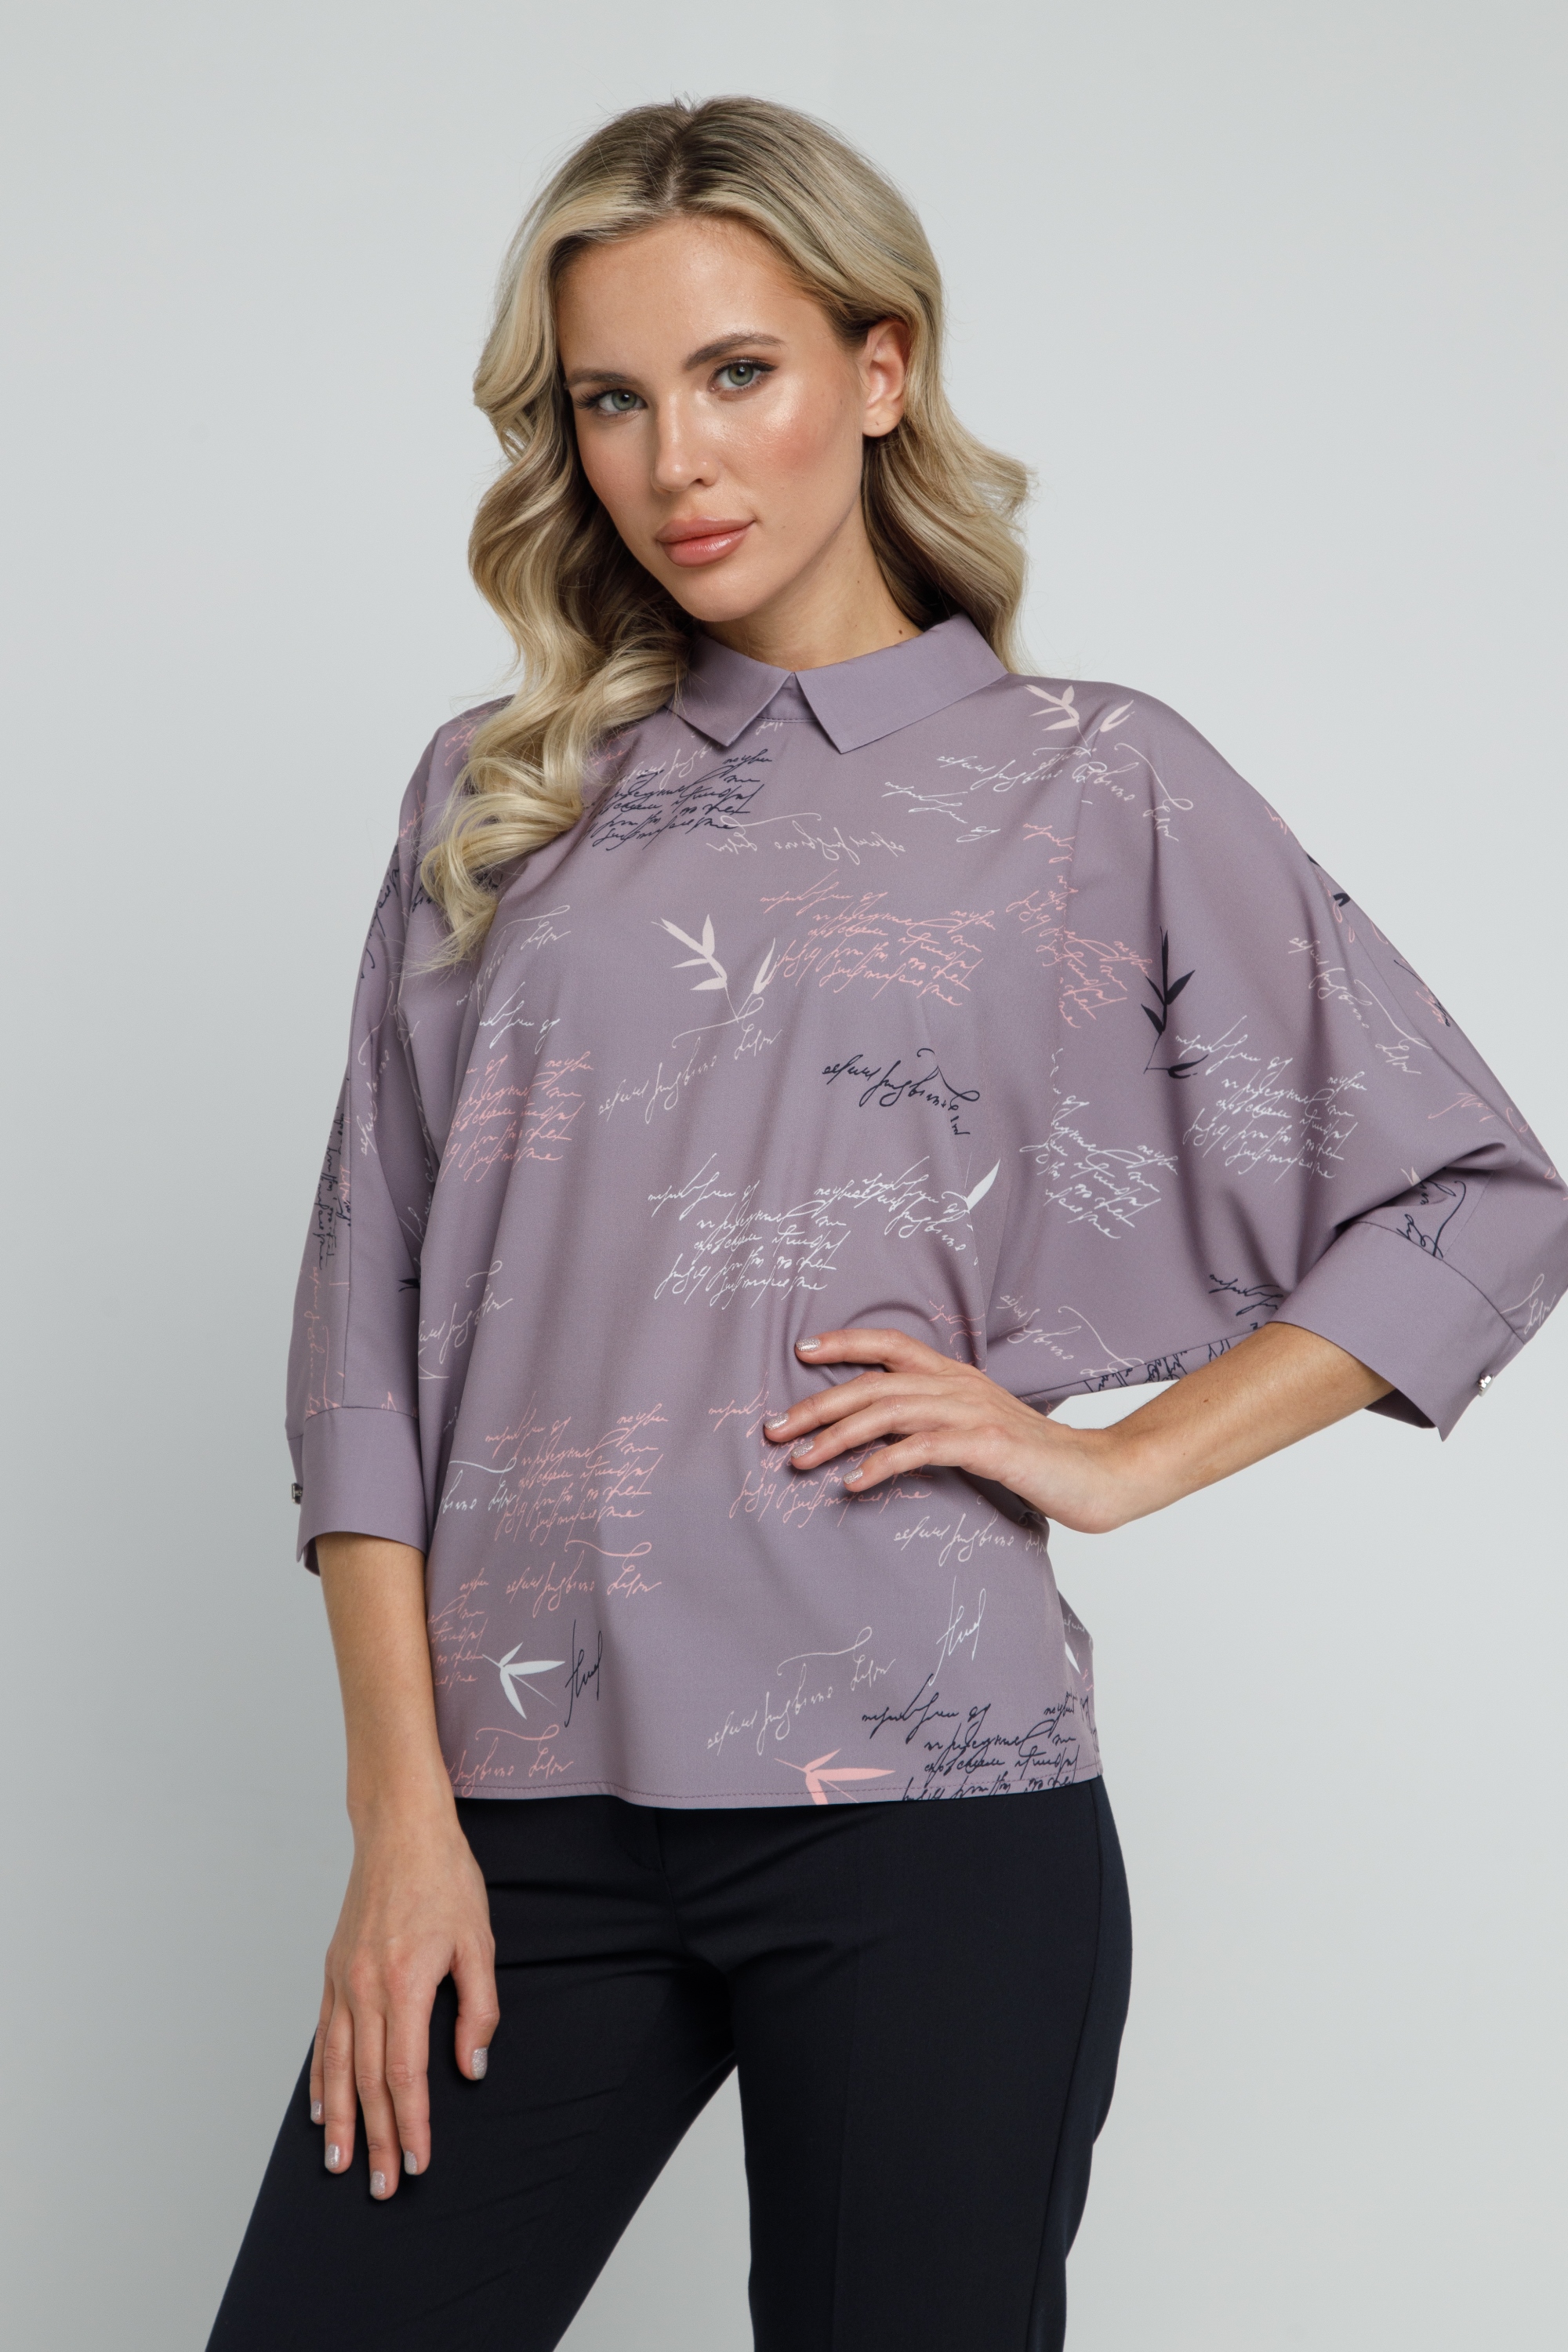 Блуза прямого силуэта с рукавами летучая мышь. 0030-01-27-30-17